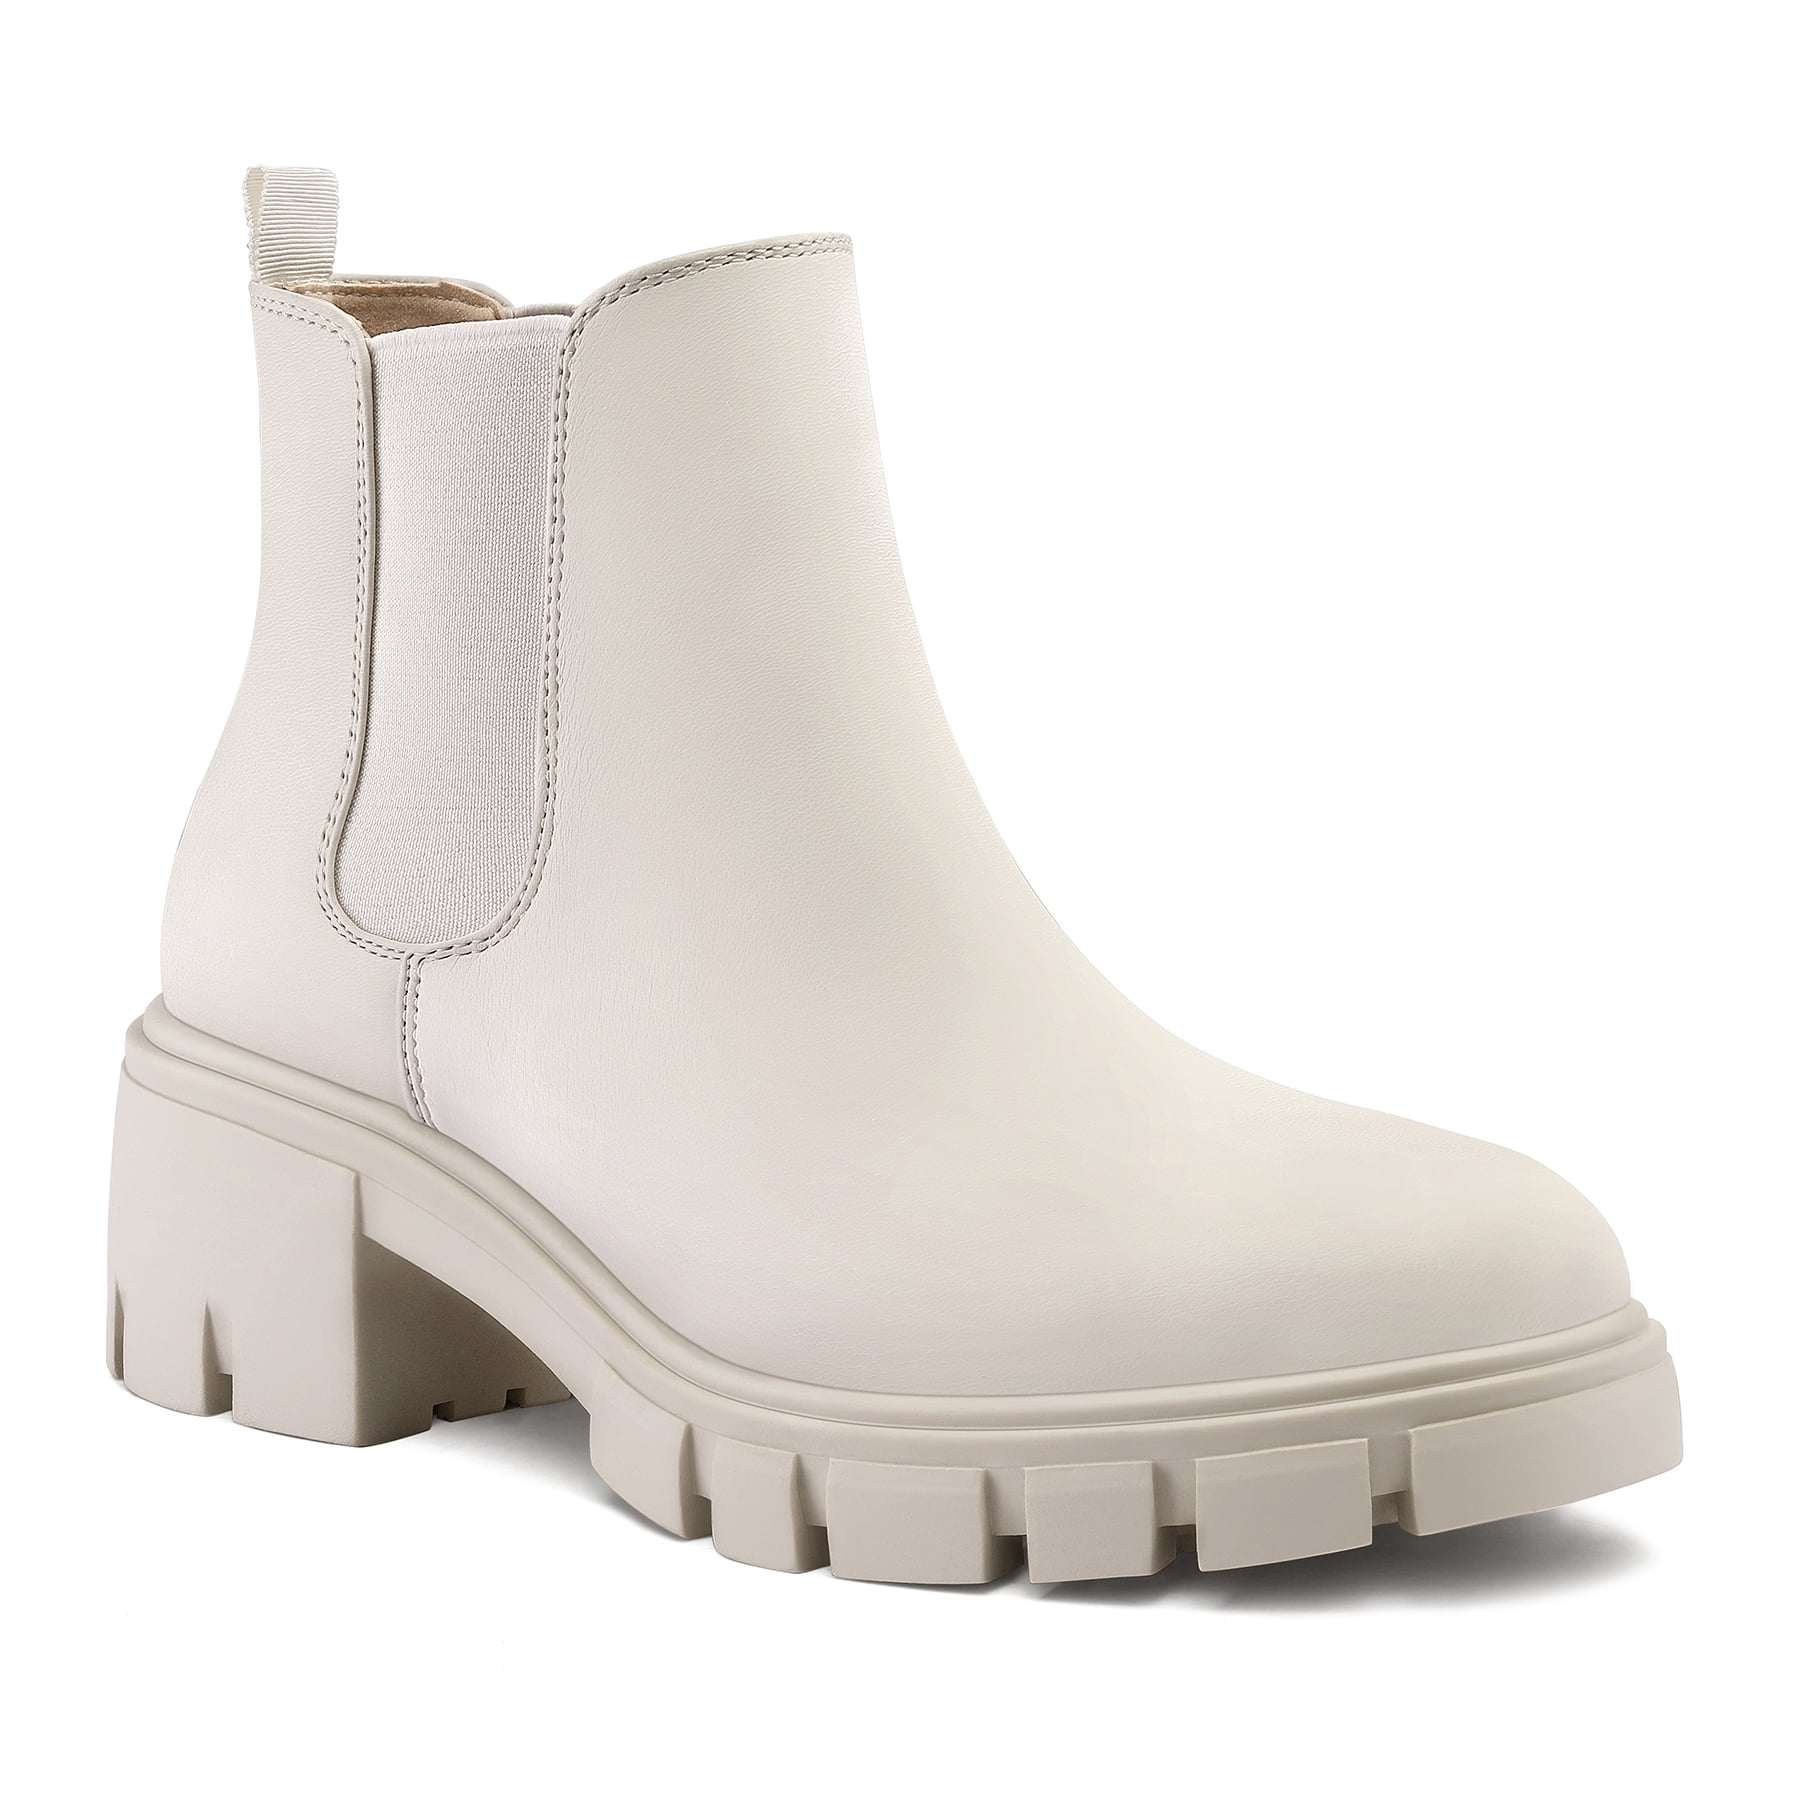 Vince Camuto Freikti Women's Boots Pale Grey Size 9 M - Walmart.com